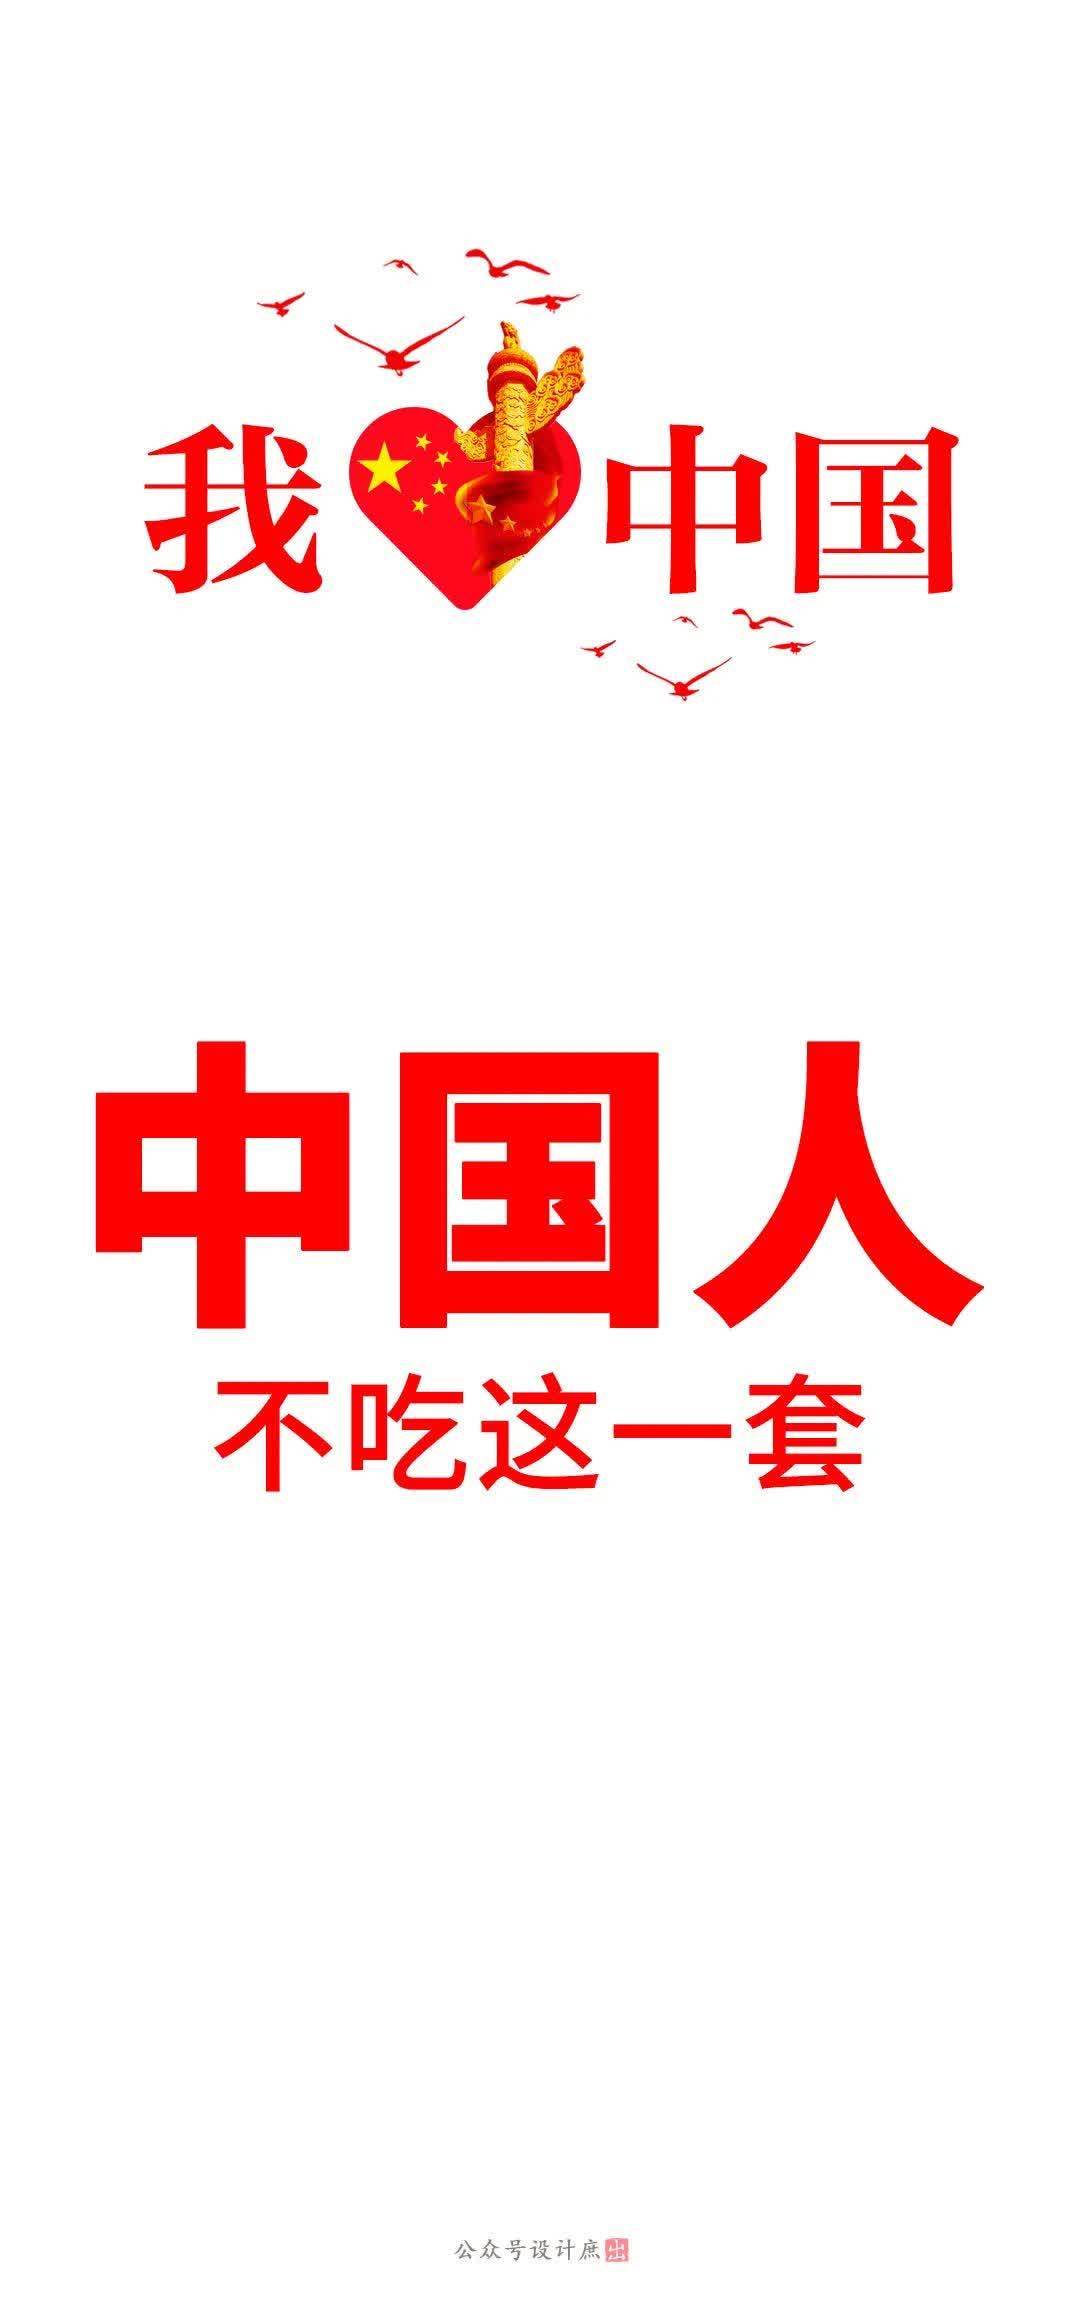 手機壁紙分享 21年最時尚的語言 中國人不吃這一套 中國熱點